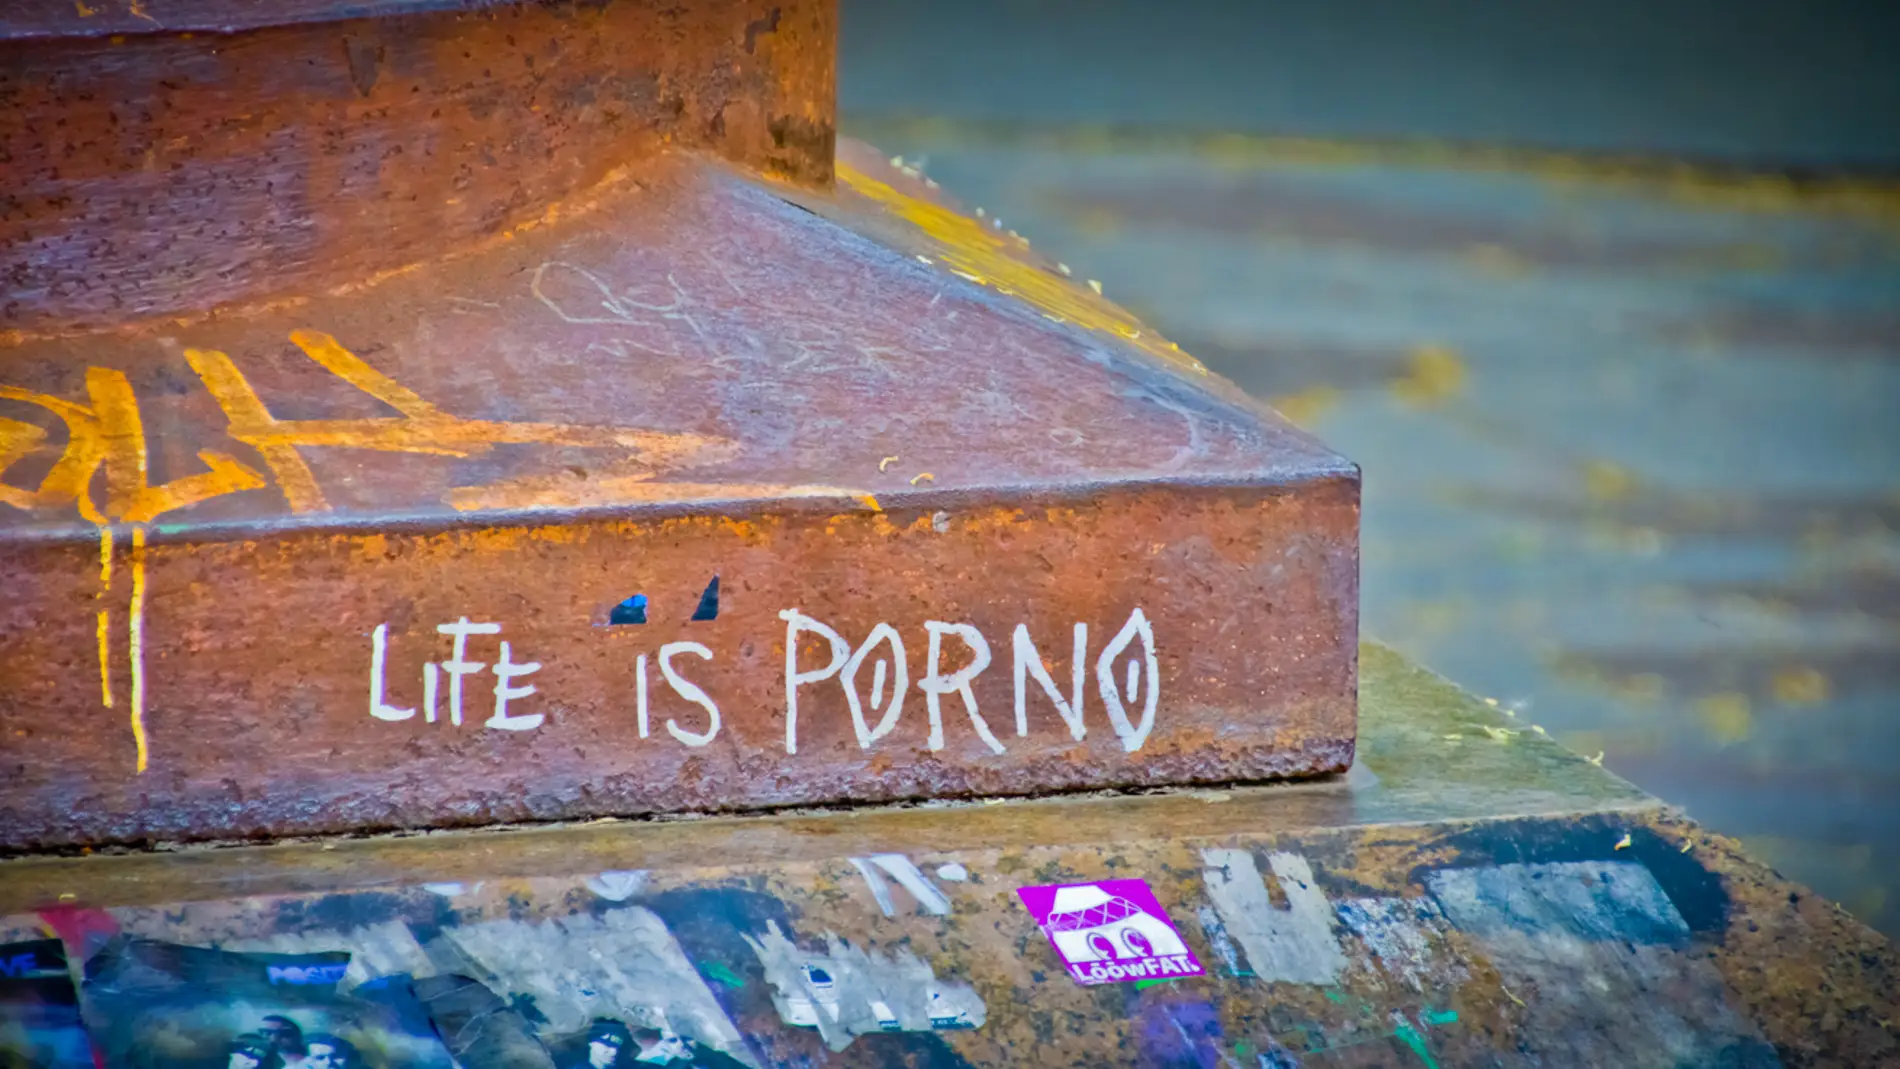 "Life is porno"